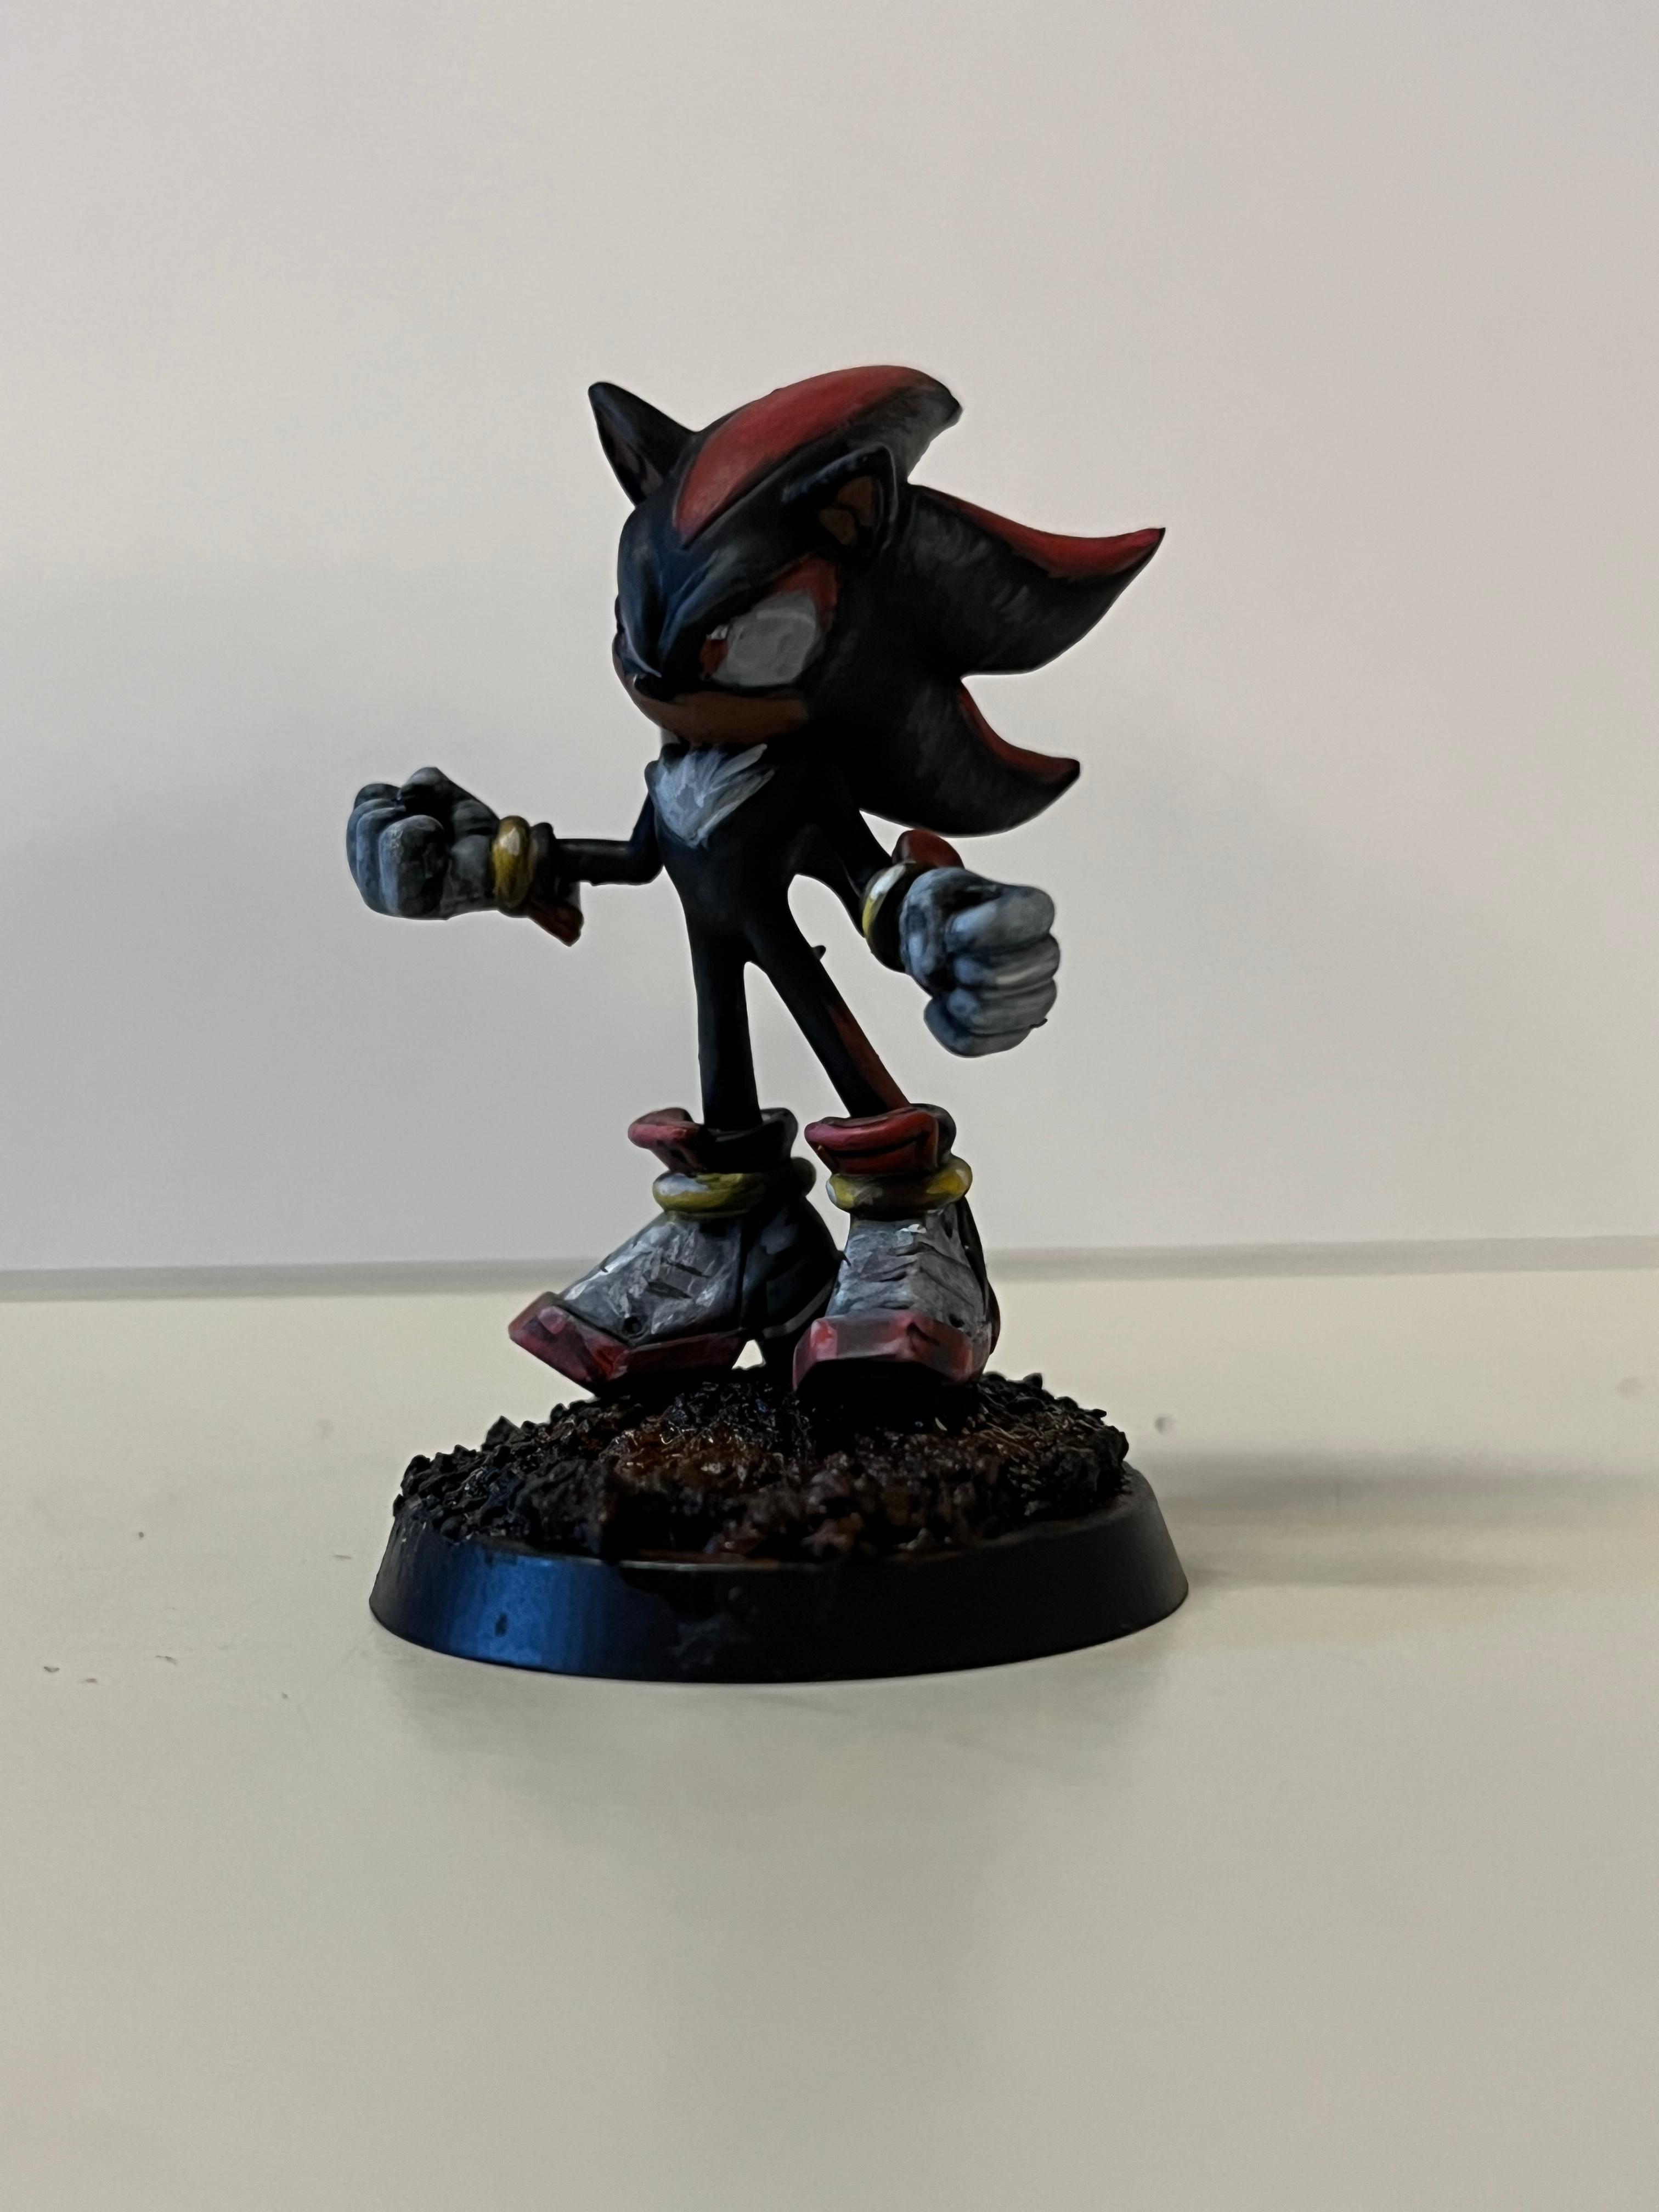 Shadow The Hedgehog - Sonic Adventure 2 - Fan Art - 3D model by